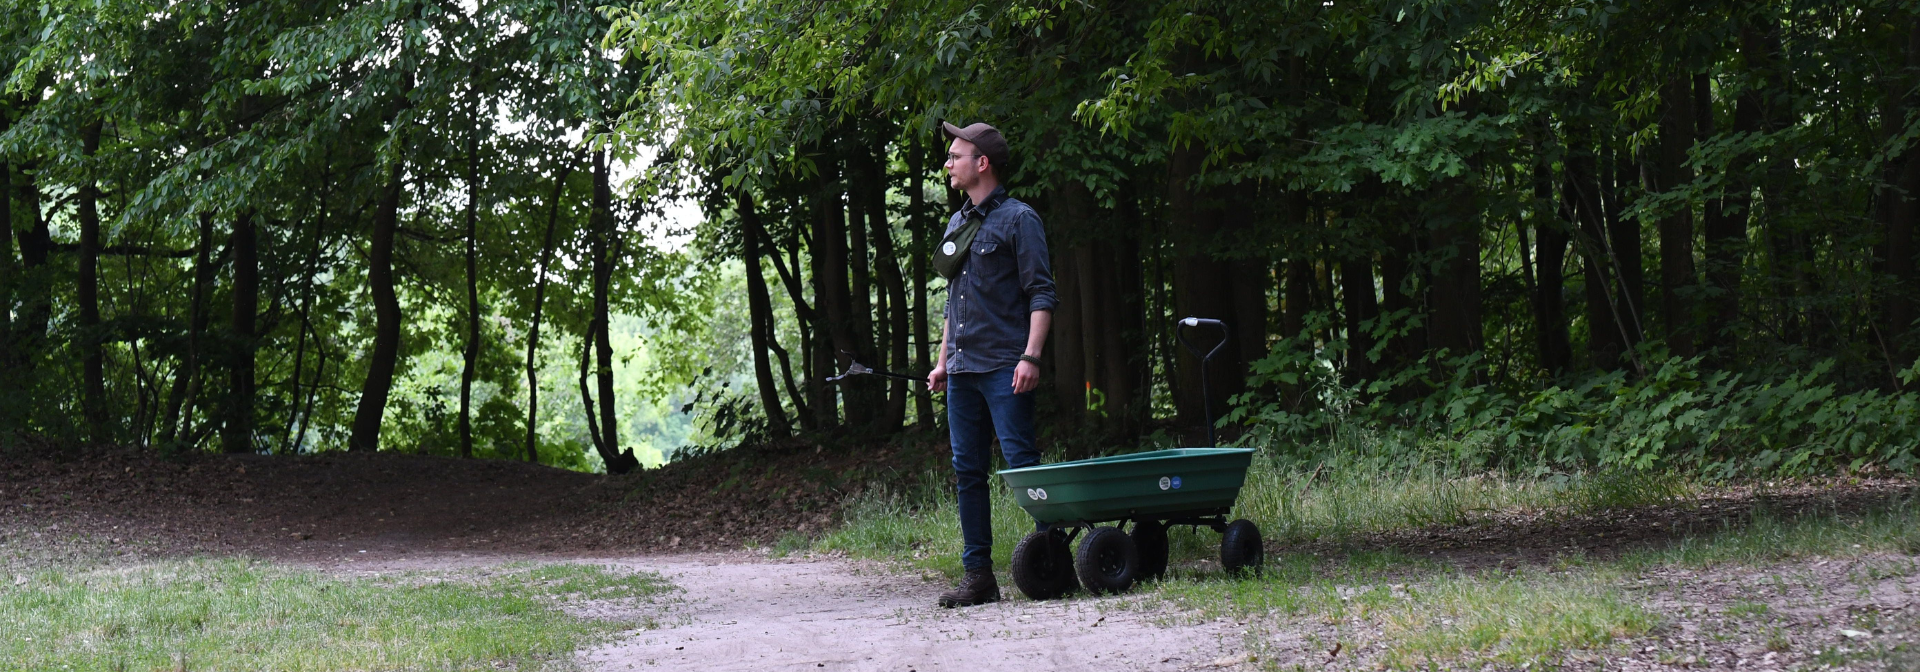 Mikołaj Basiński sprząta las w ramach inicjatywy "Szukam w lesie".